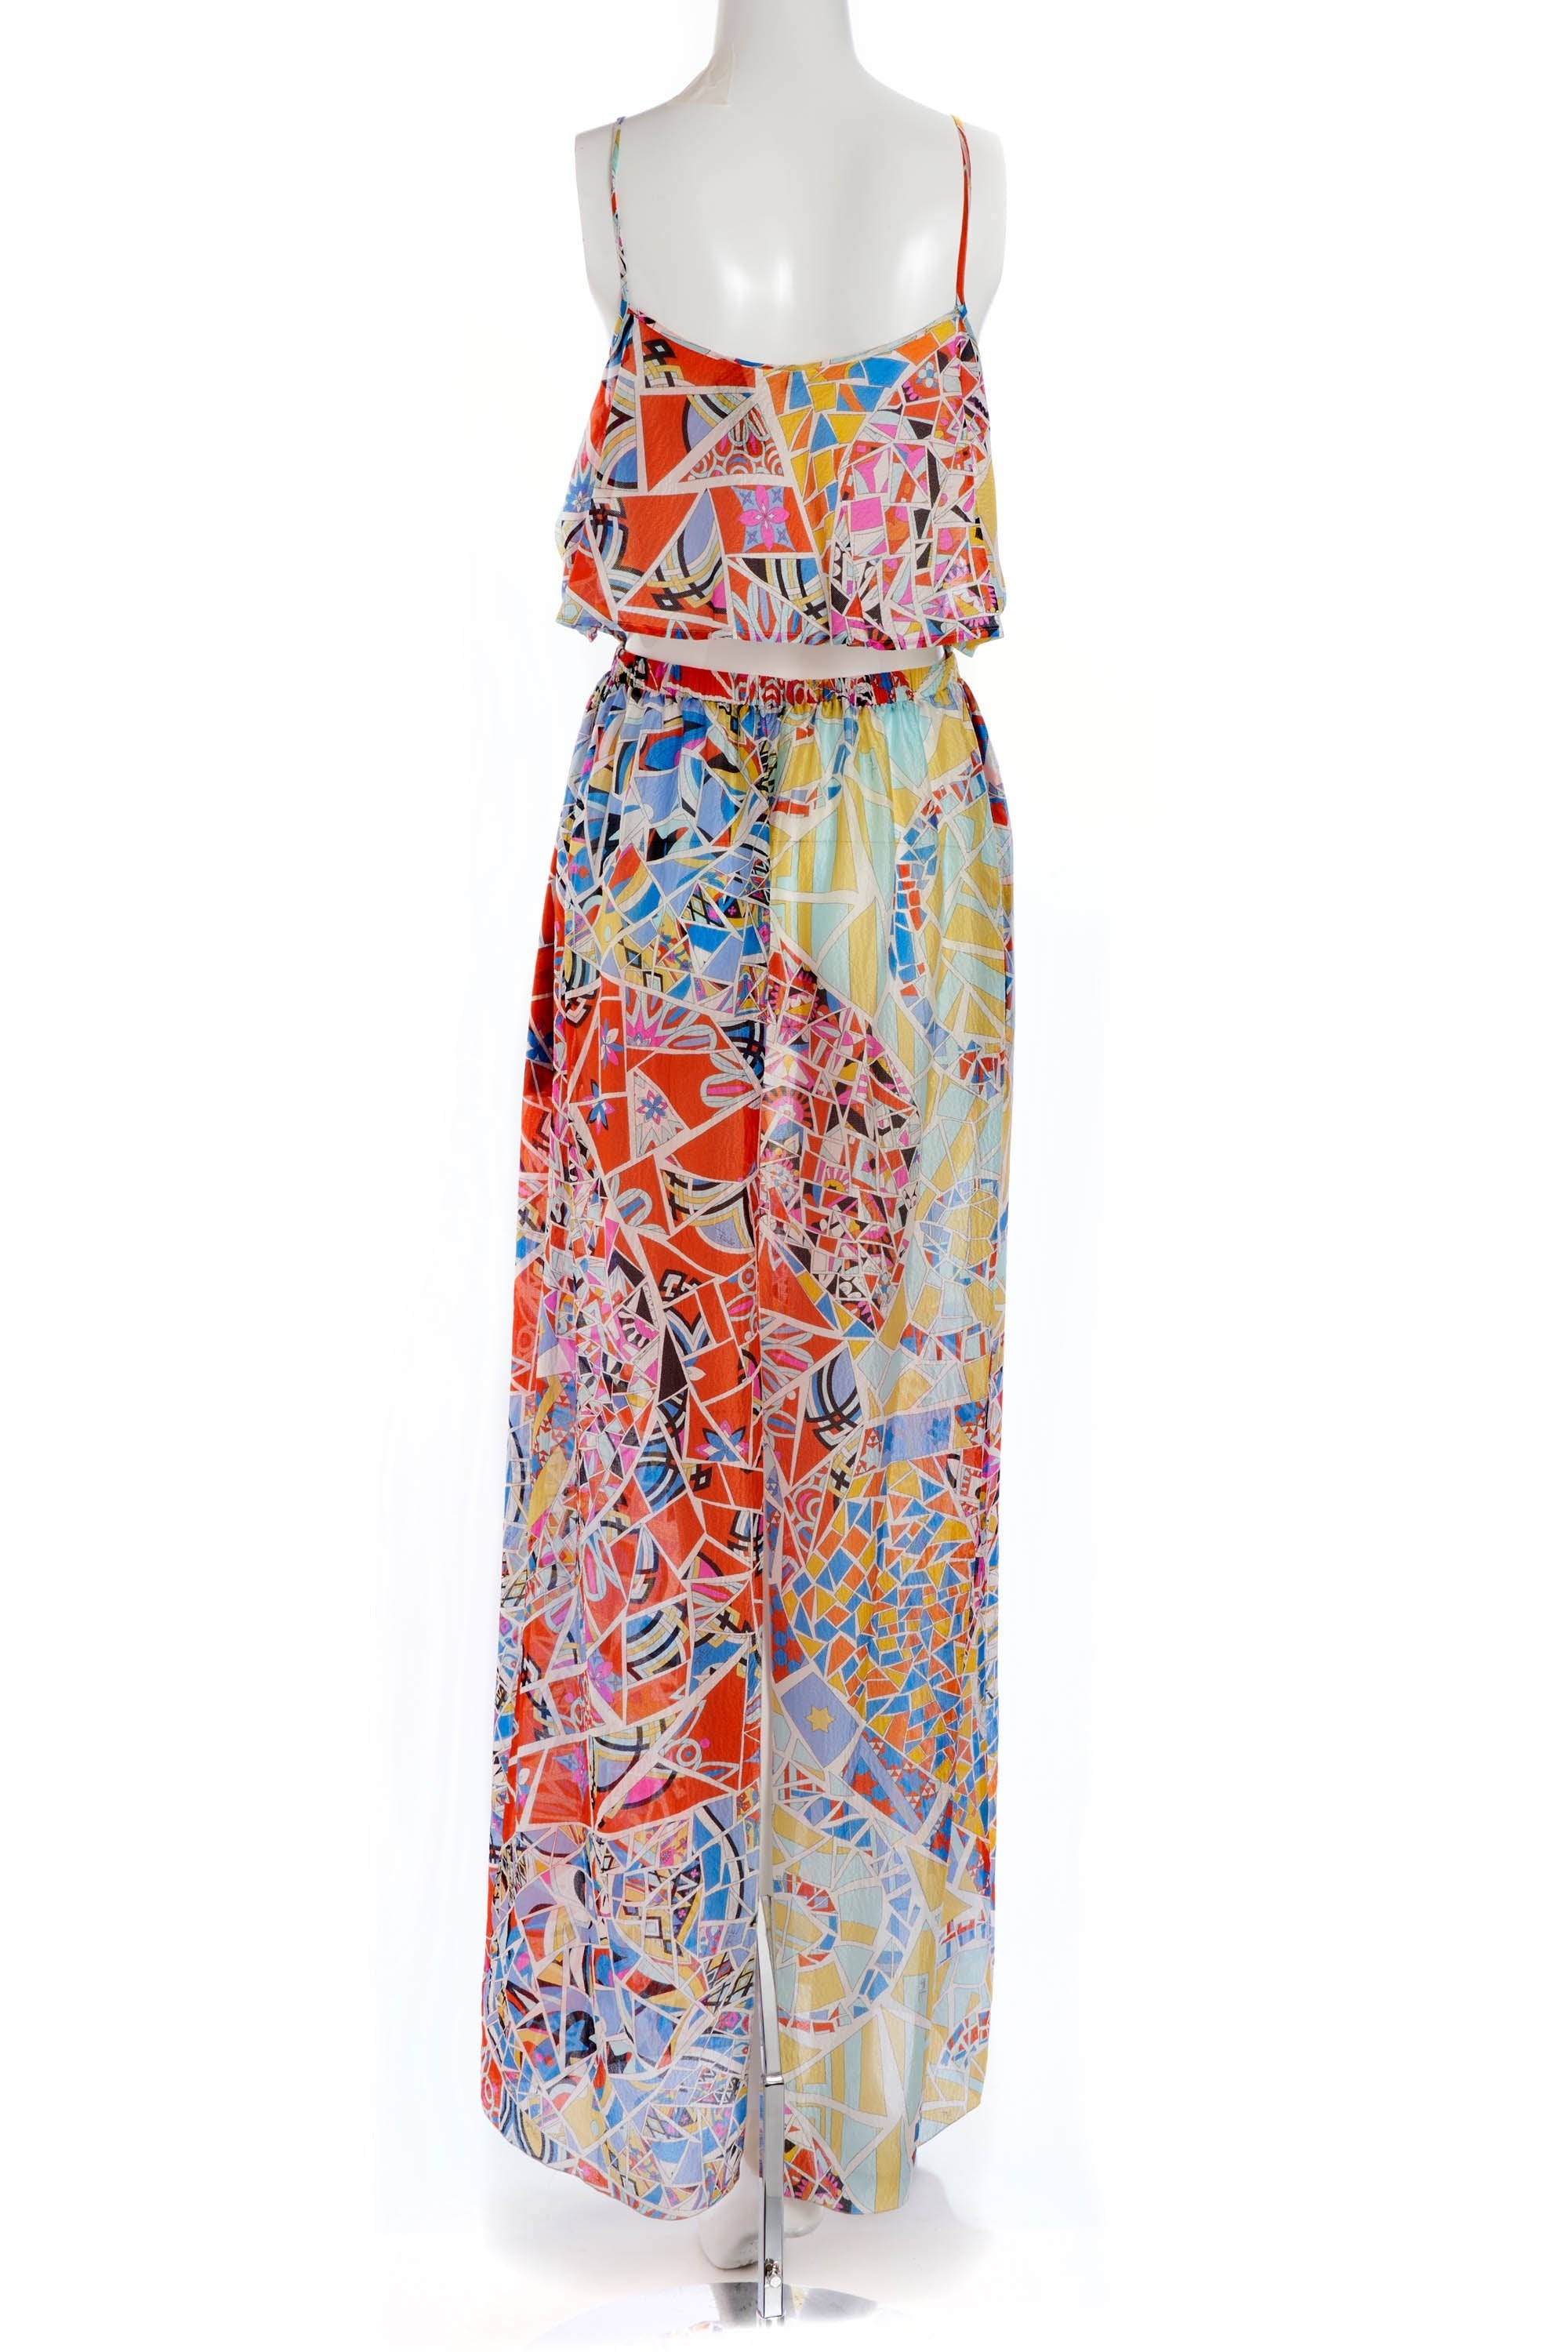 Pucci Multicolor Geometric Maxi Dress